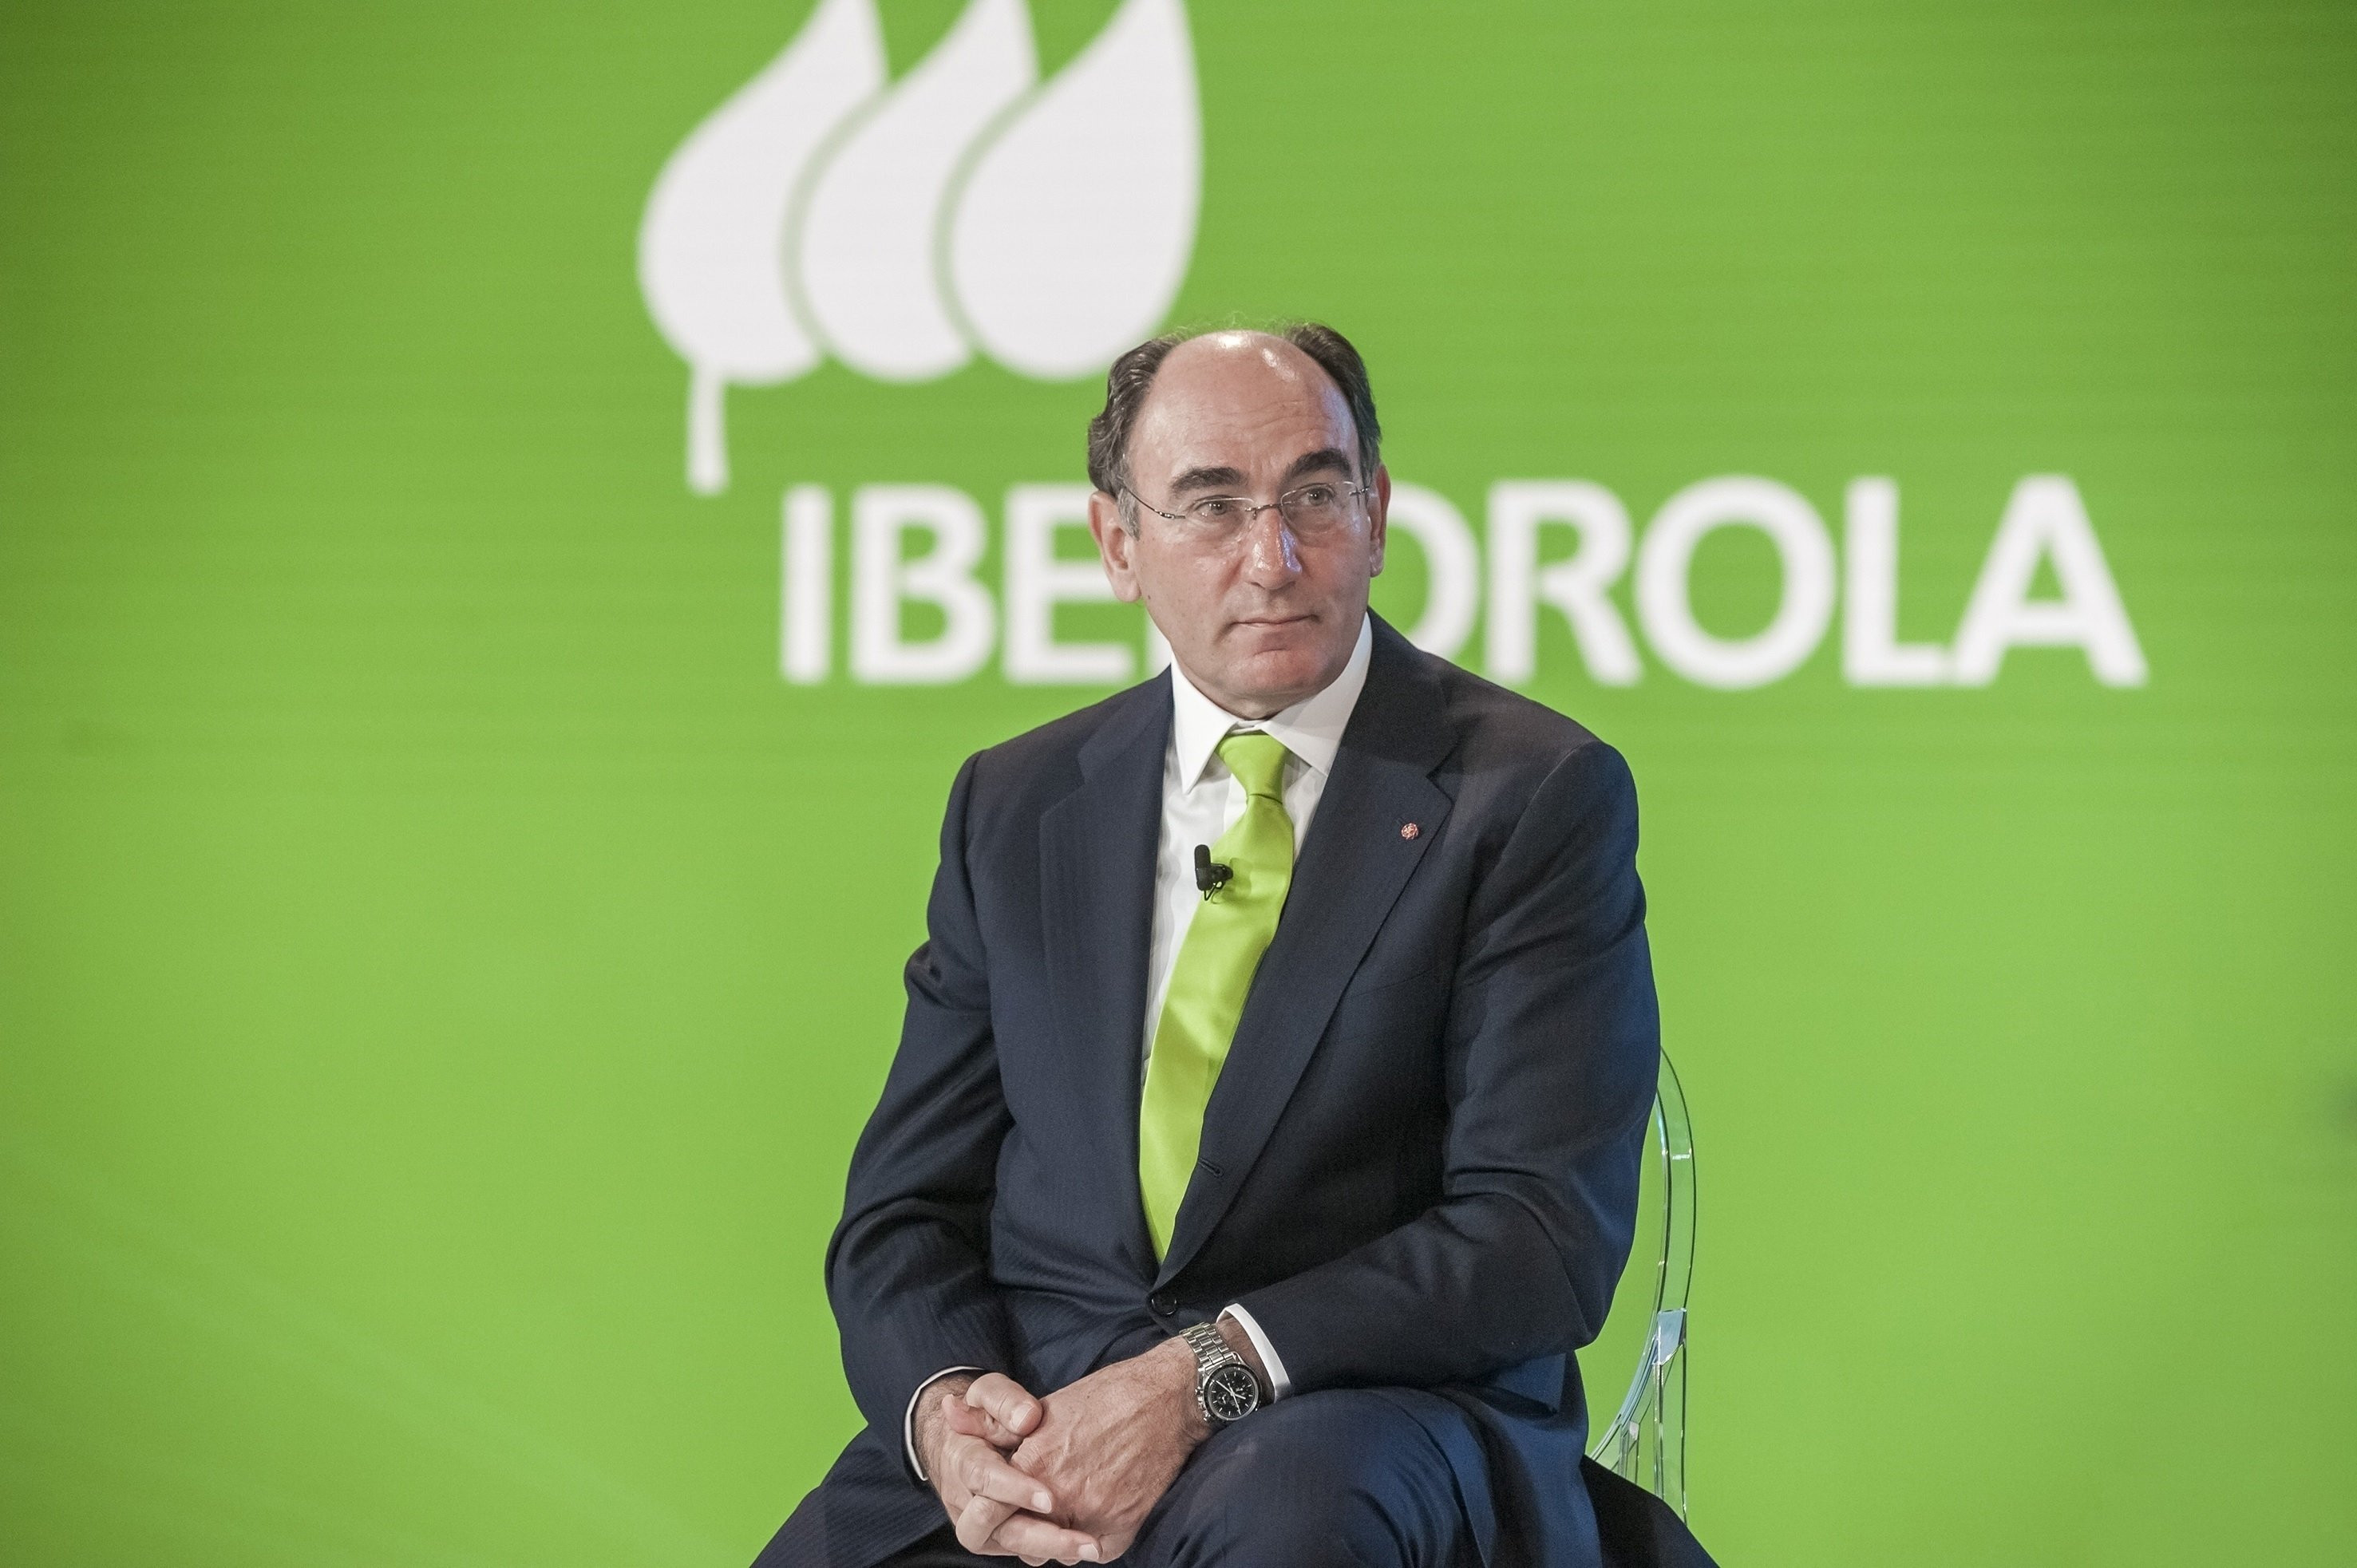 El presidente de Iberdrola, Ignacio Sánchez Galán. / EP